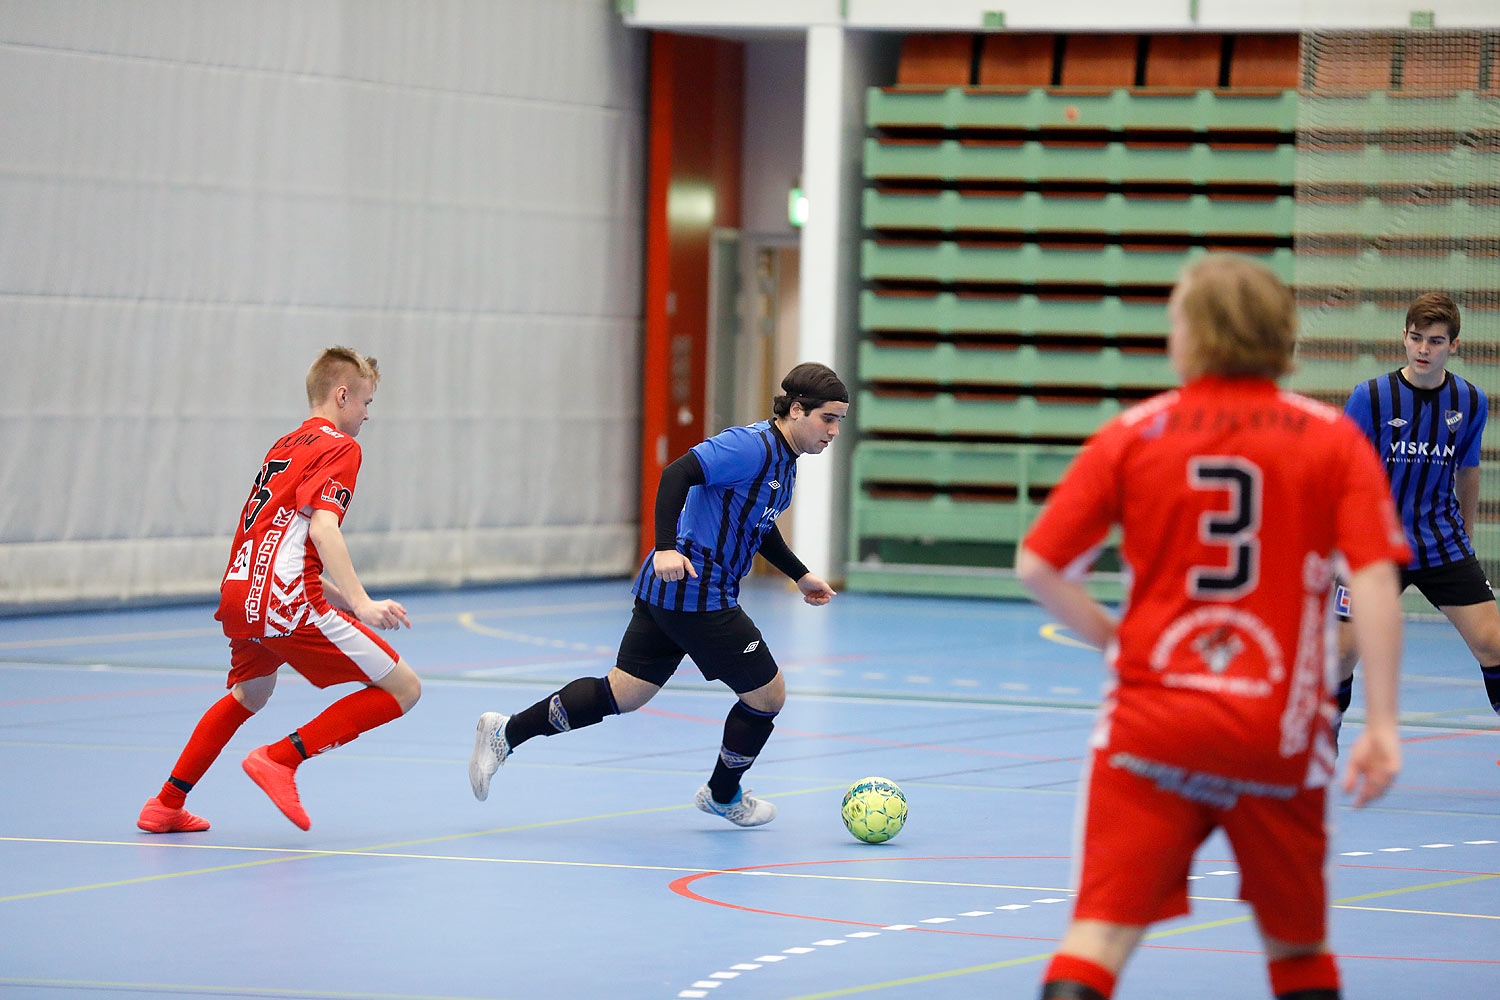 Skövde Futsalcup Herrjuniorer Ulricehamns IFK-Töreboda IK,herr,Arena Skövde,Skövde,Sverige,Skövde Futsalcup 2016,Futsal,2016,141969